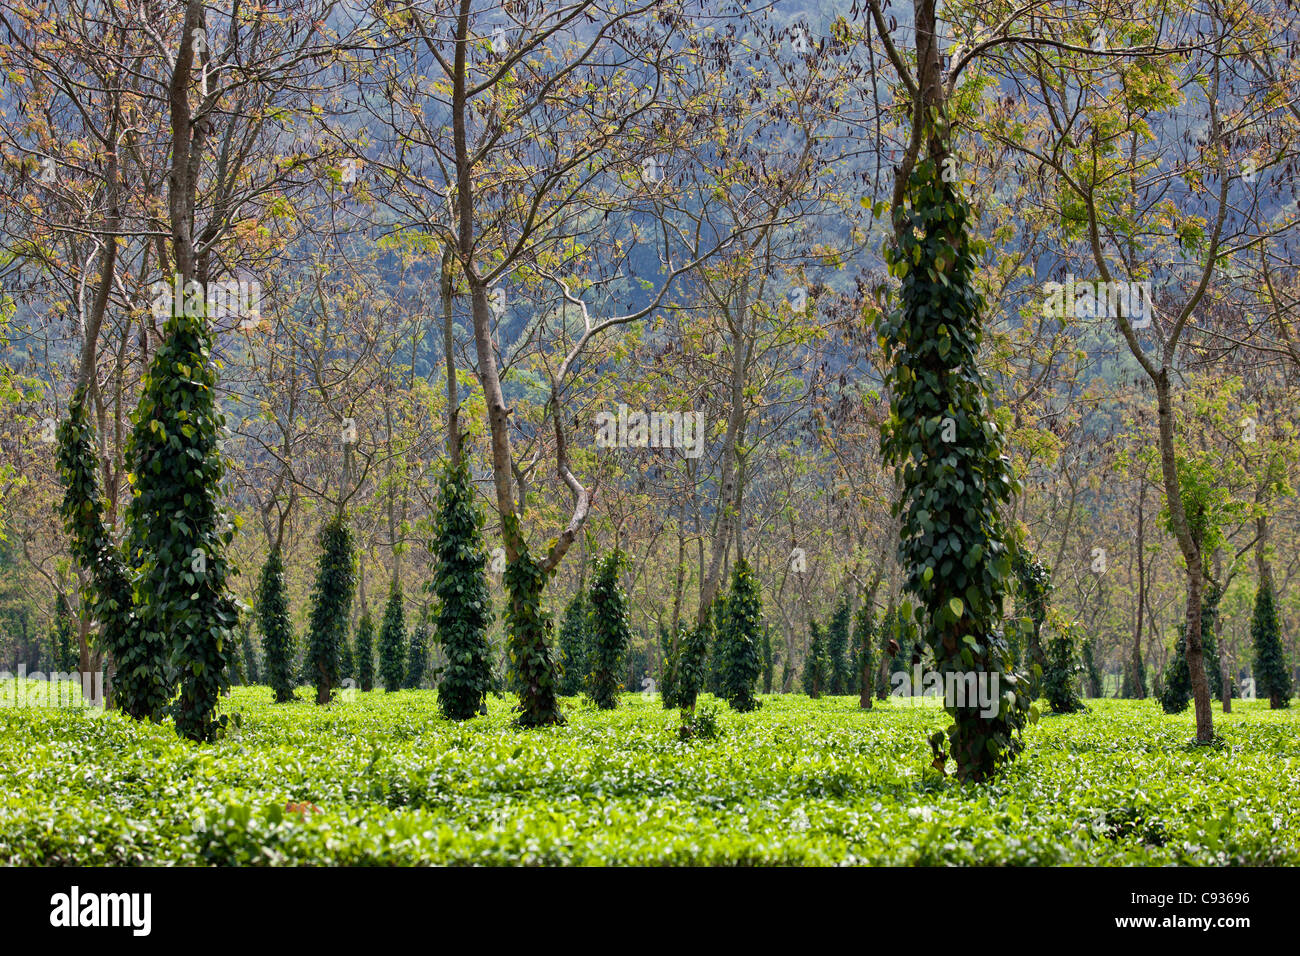 A tea garden near Kaziranga National Park with shade trees festooned with creepers. Stock Photo